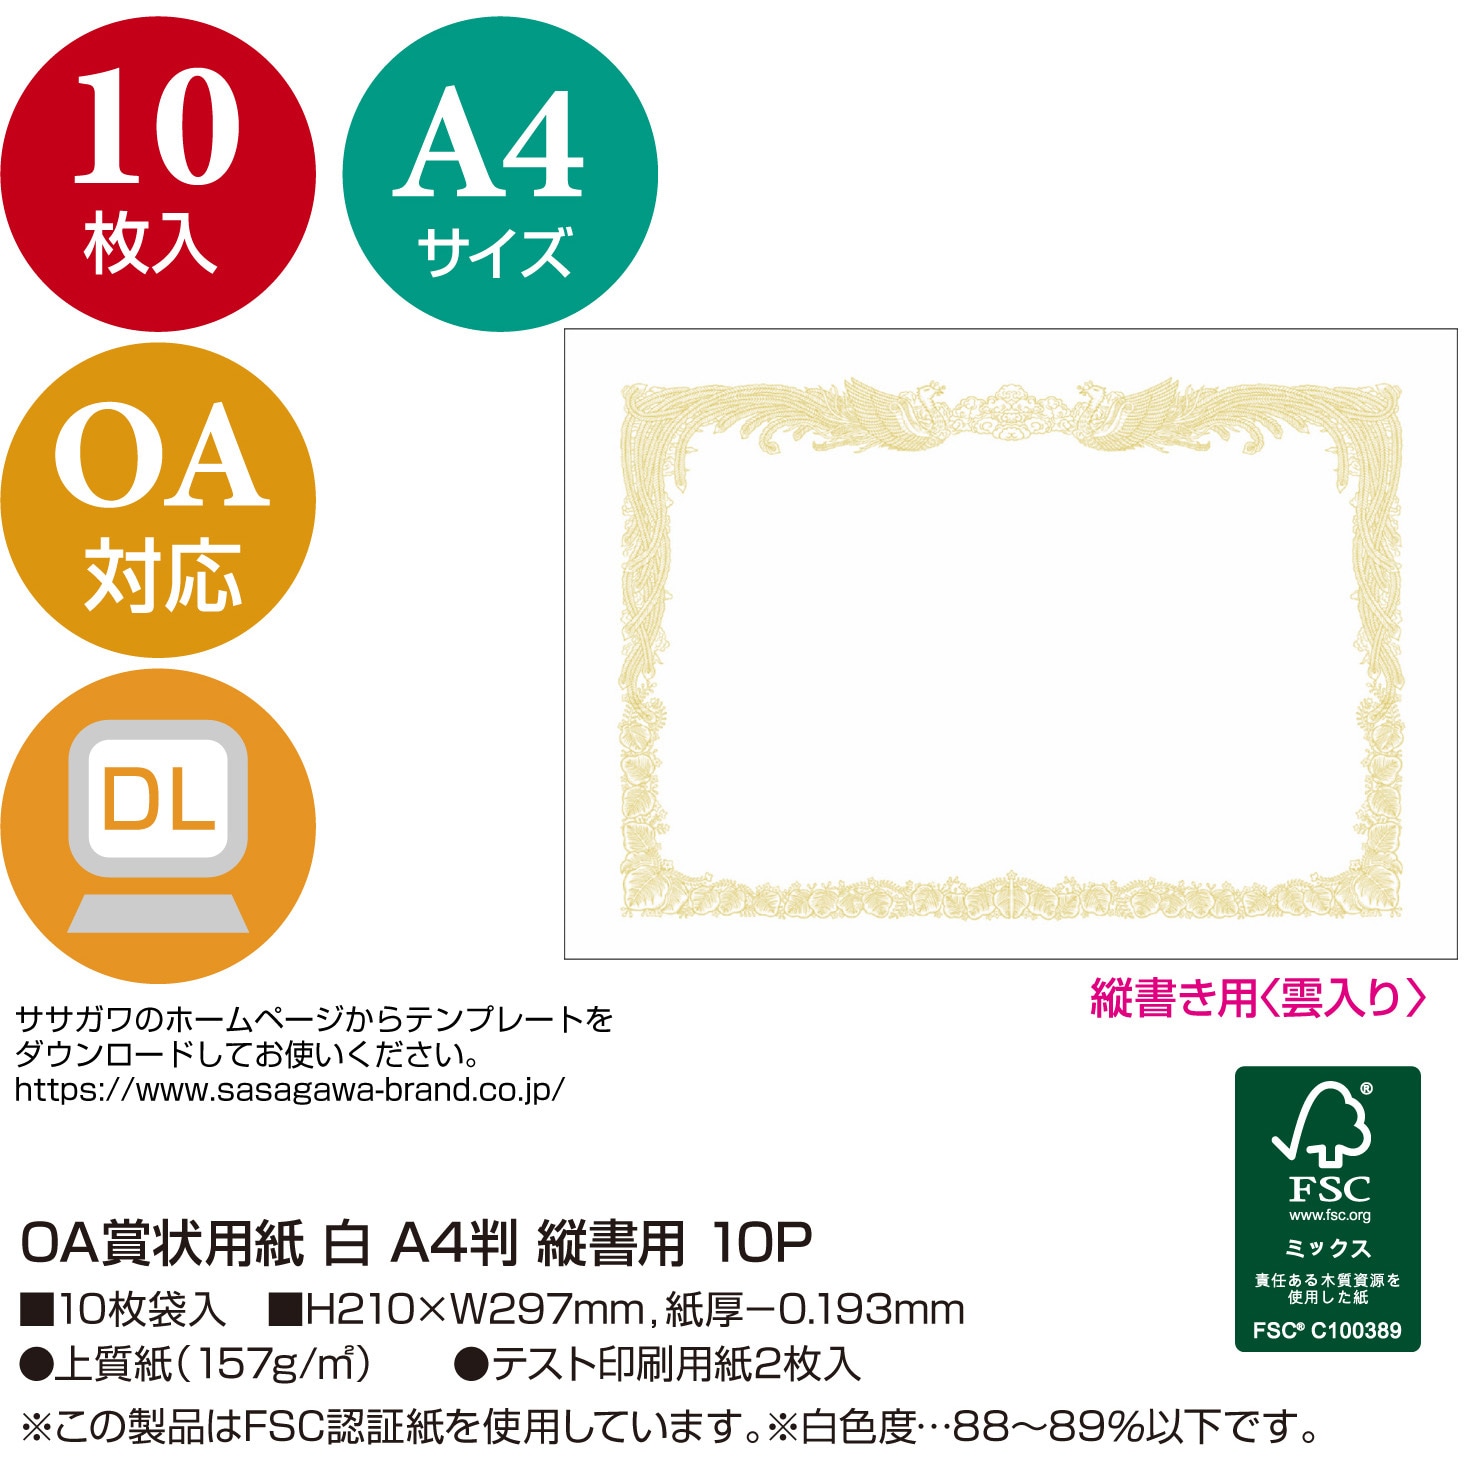 シルバーグレー サイズ (業務用200セット) オキナ OA対応辞令・賞状用紙 A4 10枚